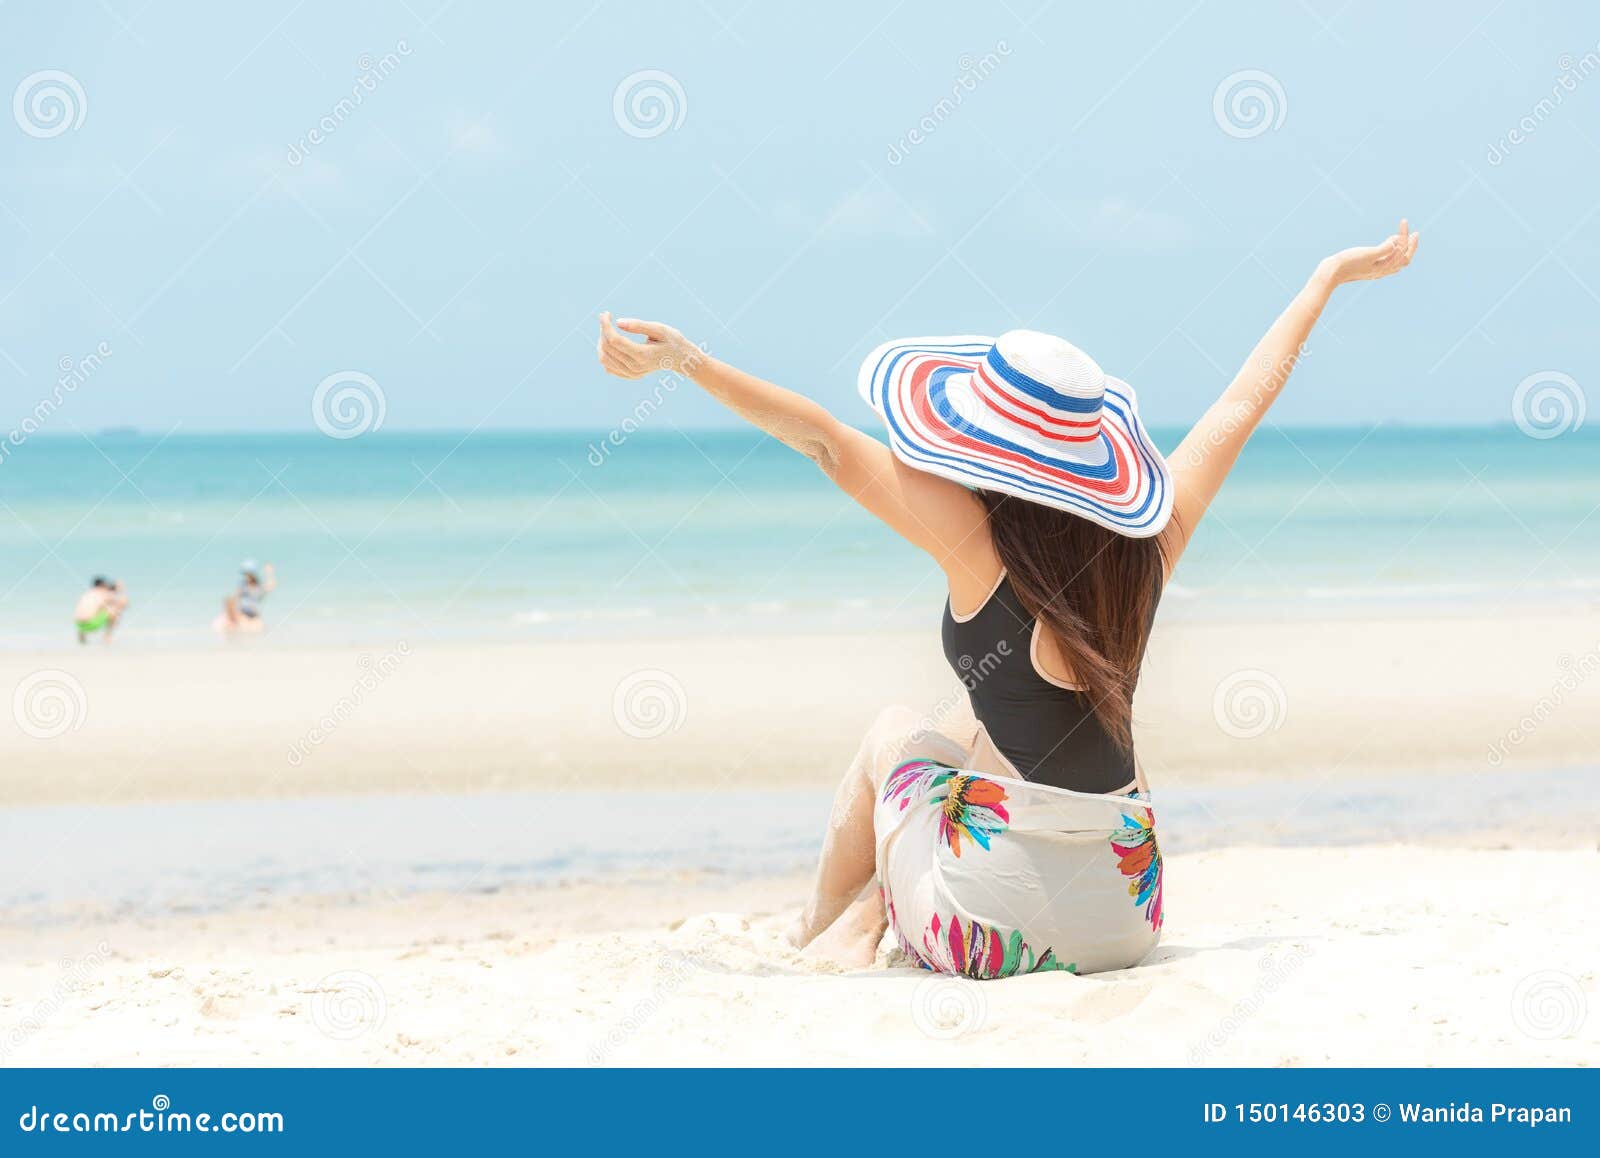 Фотография на тему Полная женщина загорает на пляже | PressFoto